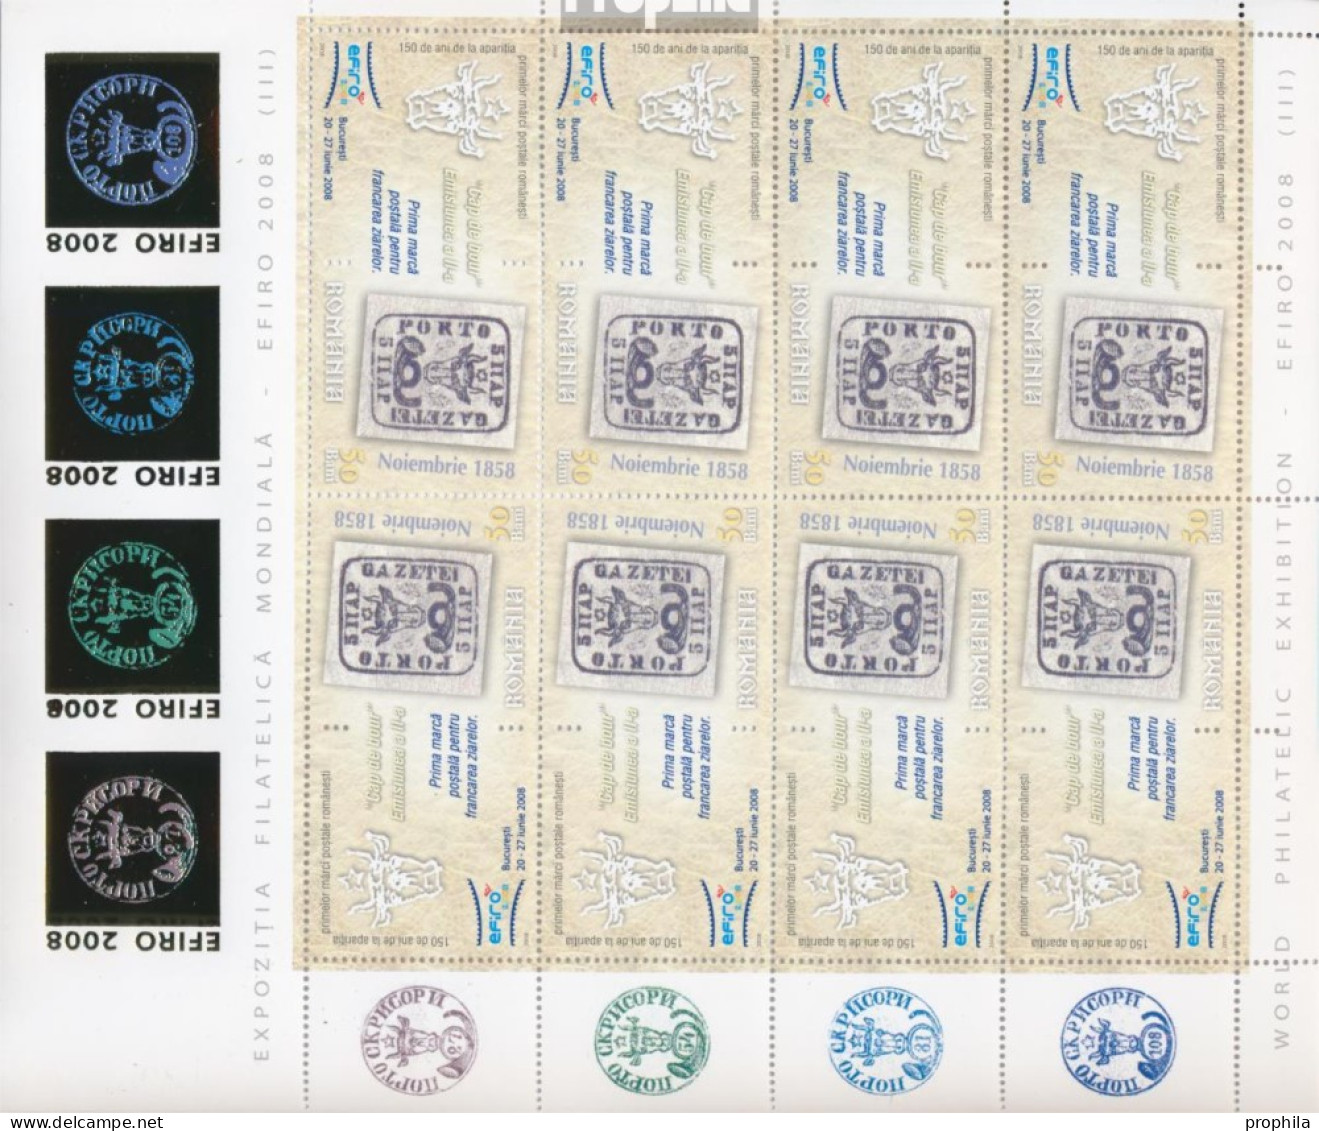 Rumänien 6299x Klb II-6304x Klb II Kleinbogen (kompl.Ausg.) Postfrisch 2008 BriefmarkenausstellungEFIRO 08 - Nuovi